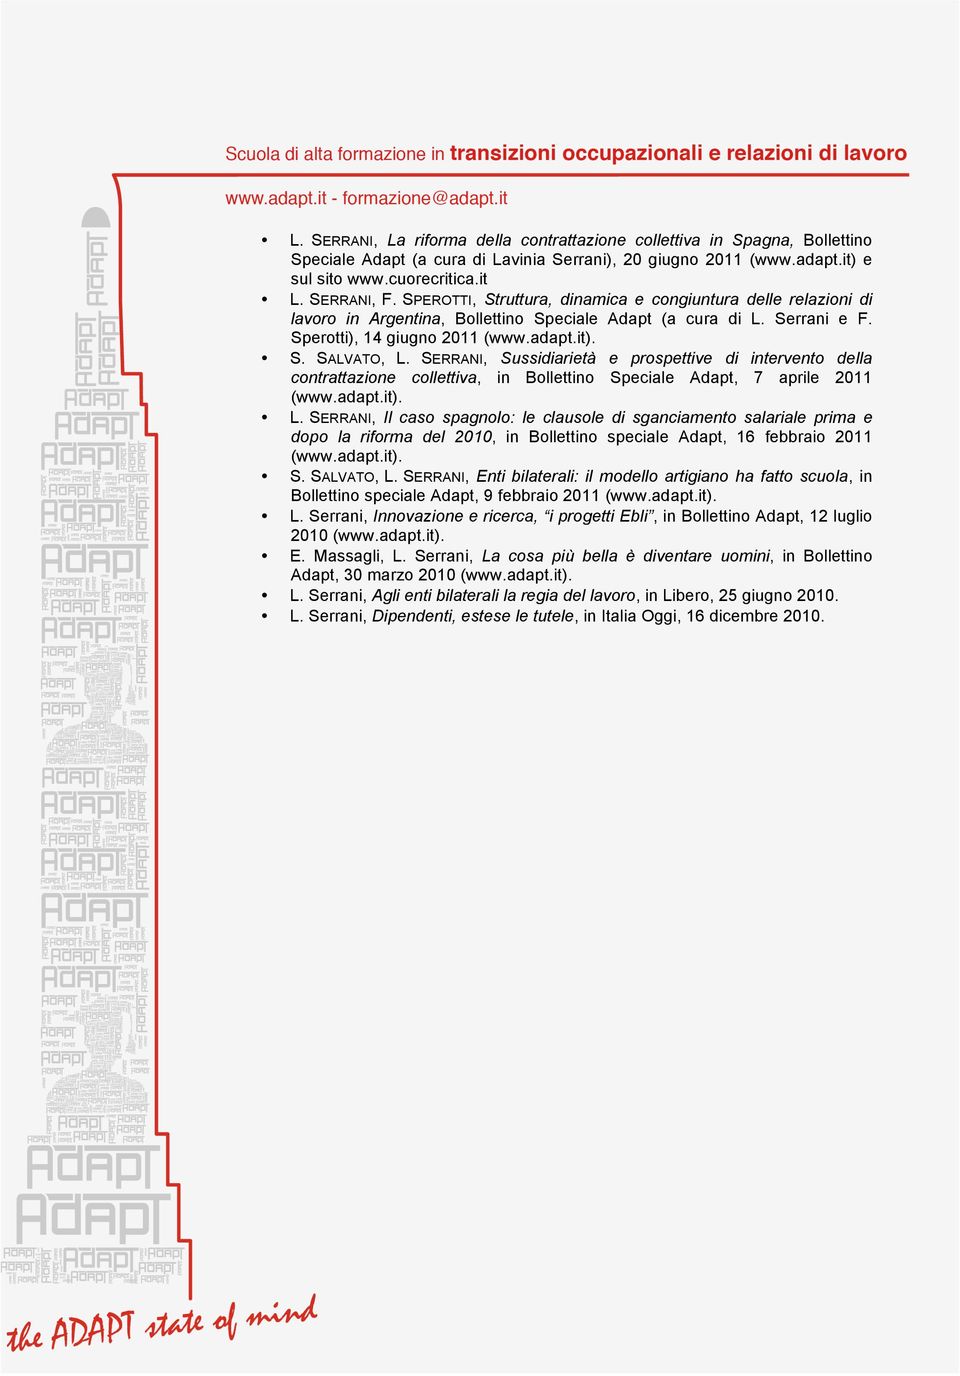 SERRANI, Sussidiarietà e prospettive di intervento della contrattazione collettiva, in Bollettino Speciale Adapt, 7 aprile 2011 (www.adapt.it). L.